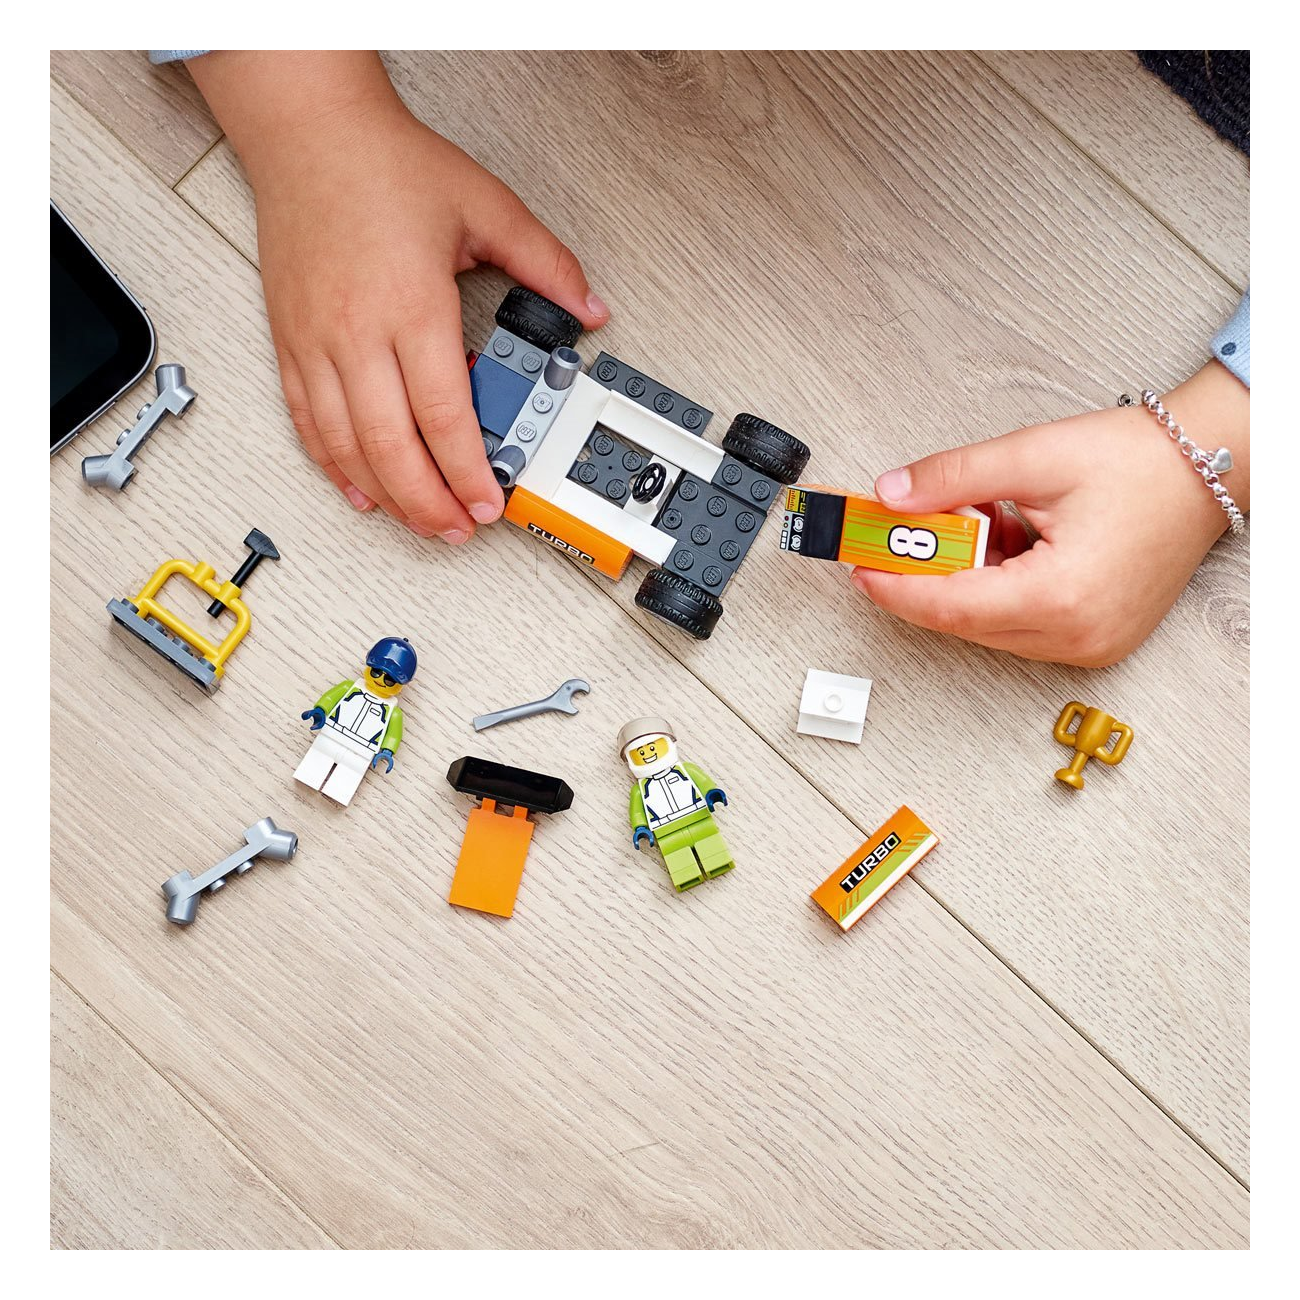 LEGO City Car – Play